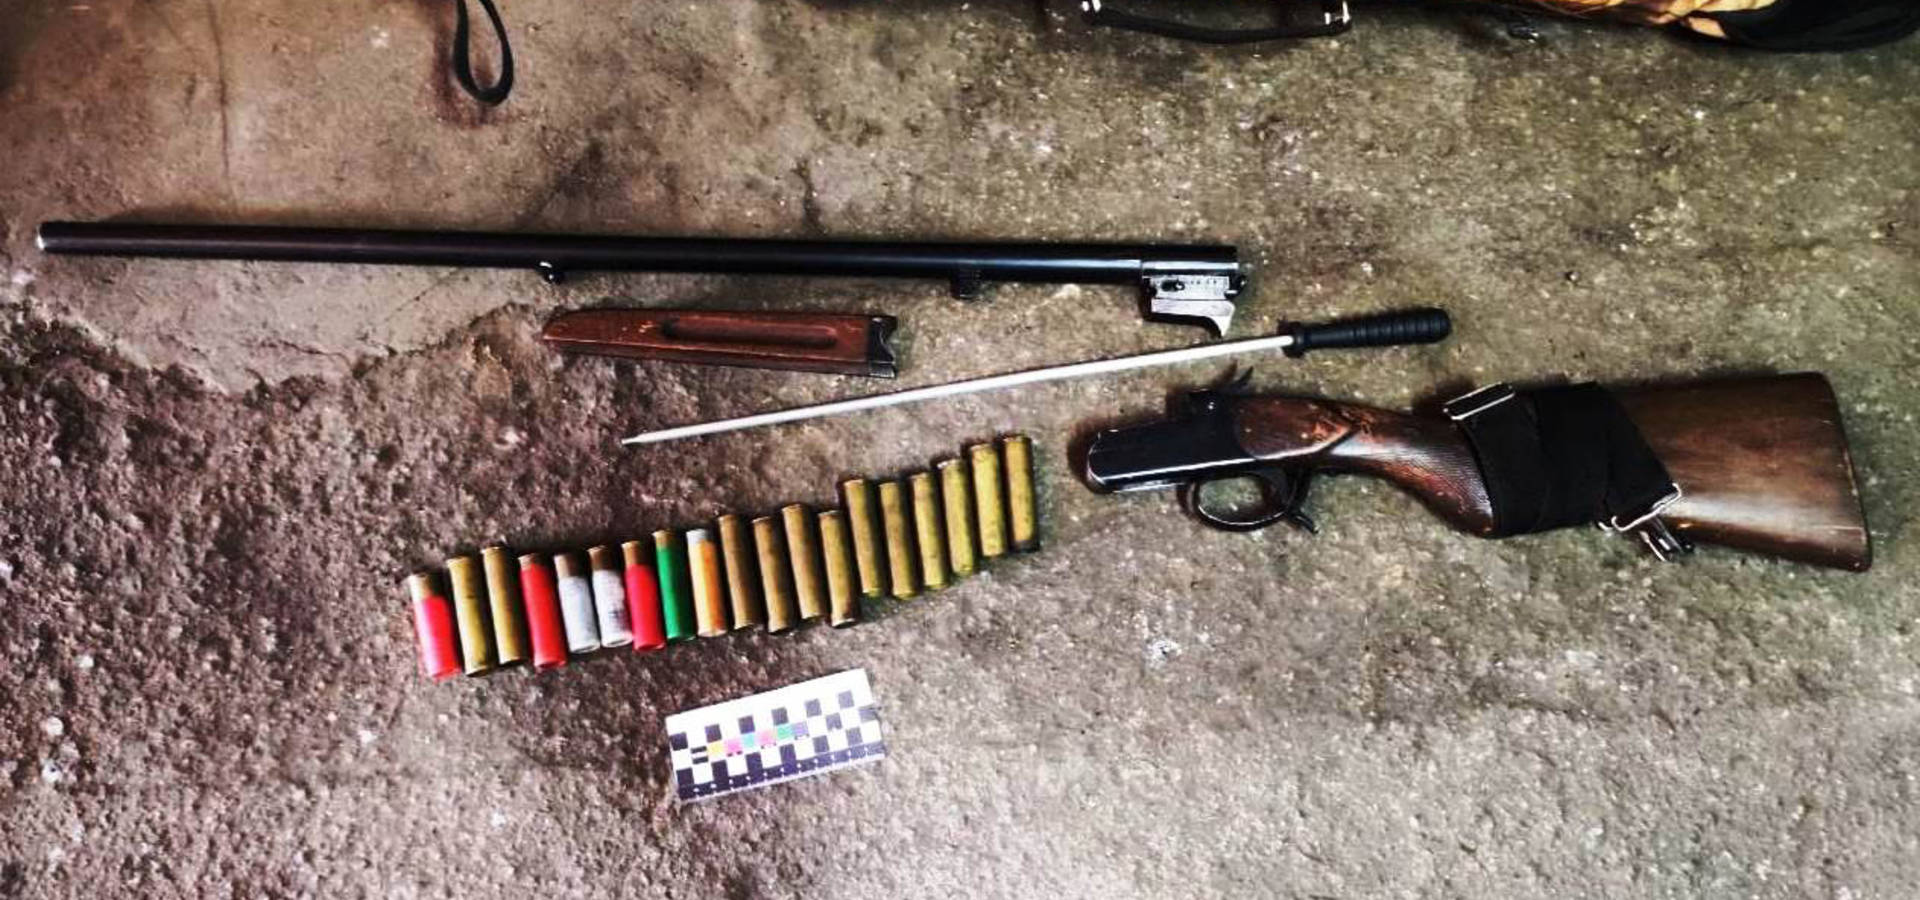  Зброю, набої, гранати та наркотики знайшла поліція в гаражі жителя Хмільницького району